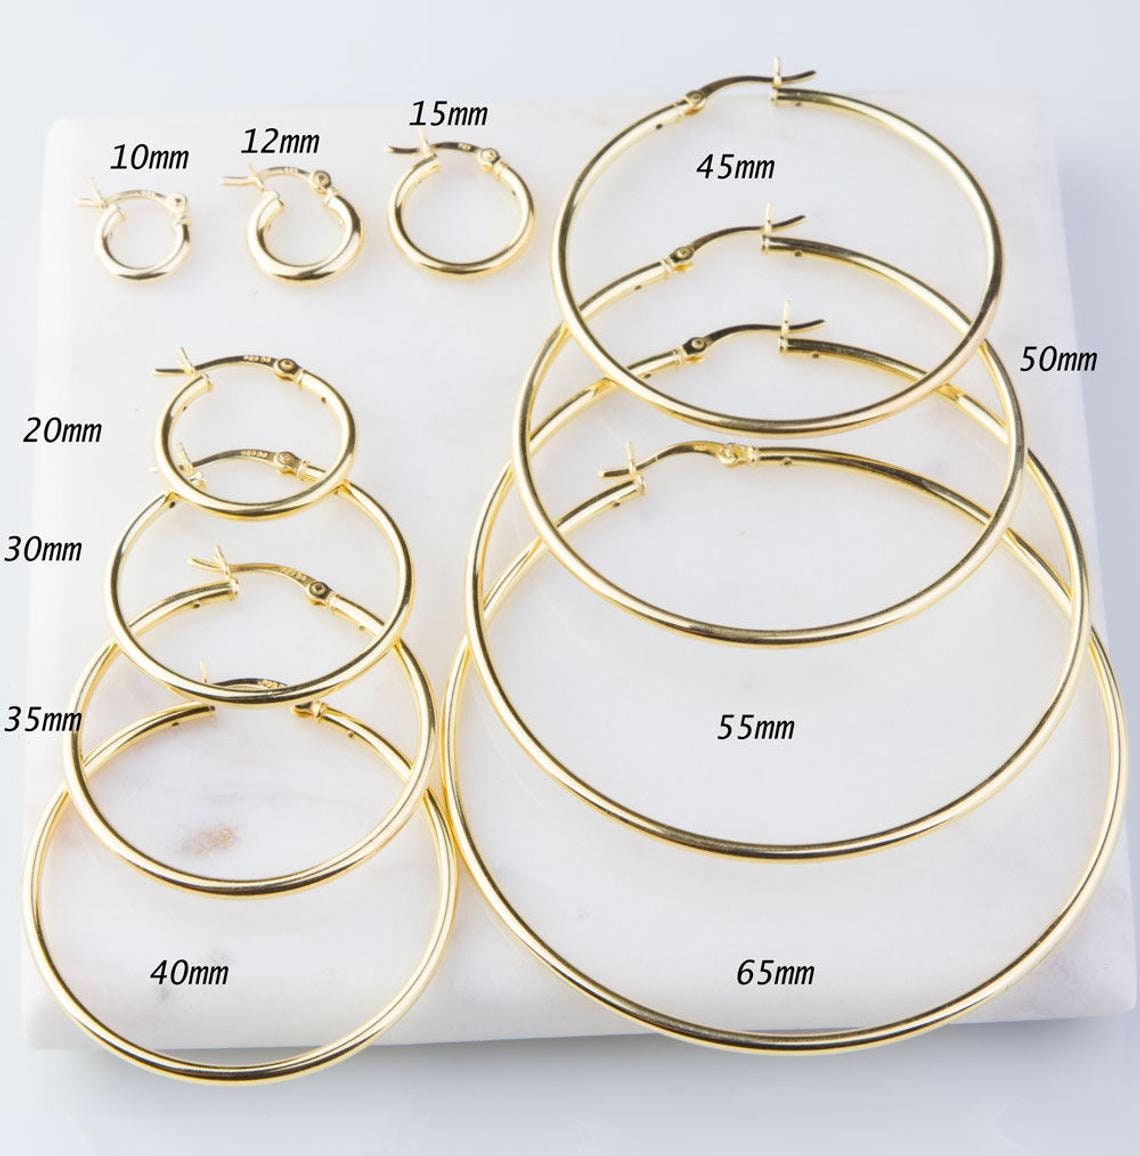 SKU: PRE992 Quality Gold 14k High Polished 7mm Wavy Oval Omega Back Hoop  Earrings PRE992 - N. Fox Jewelers